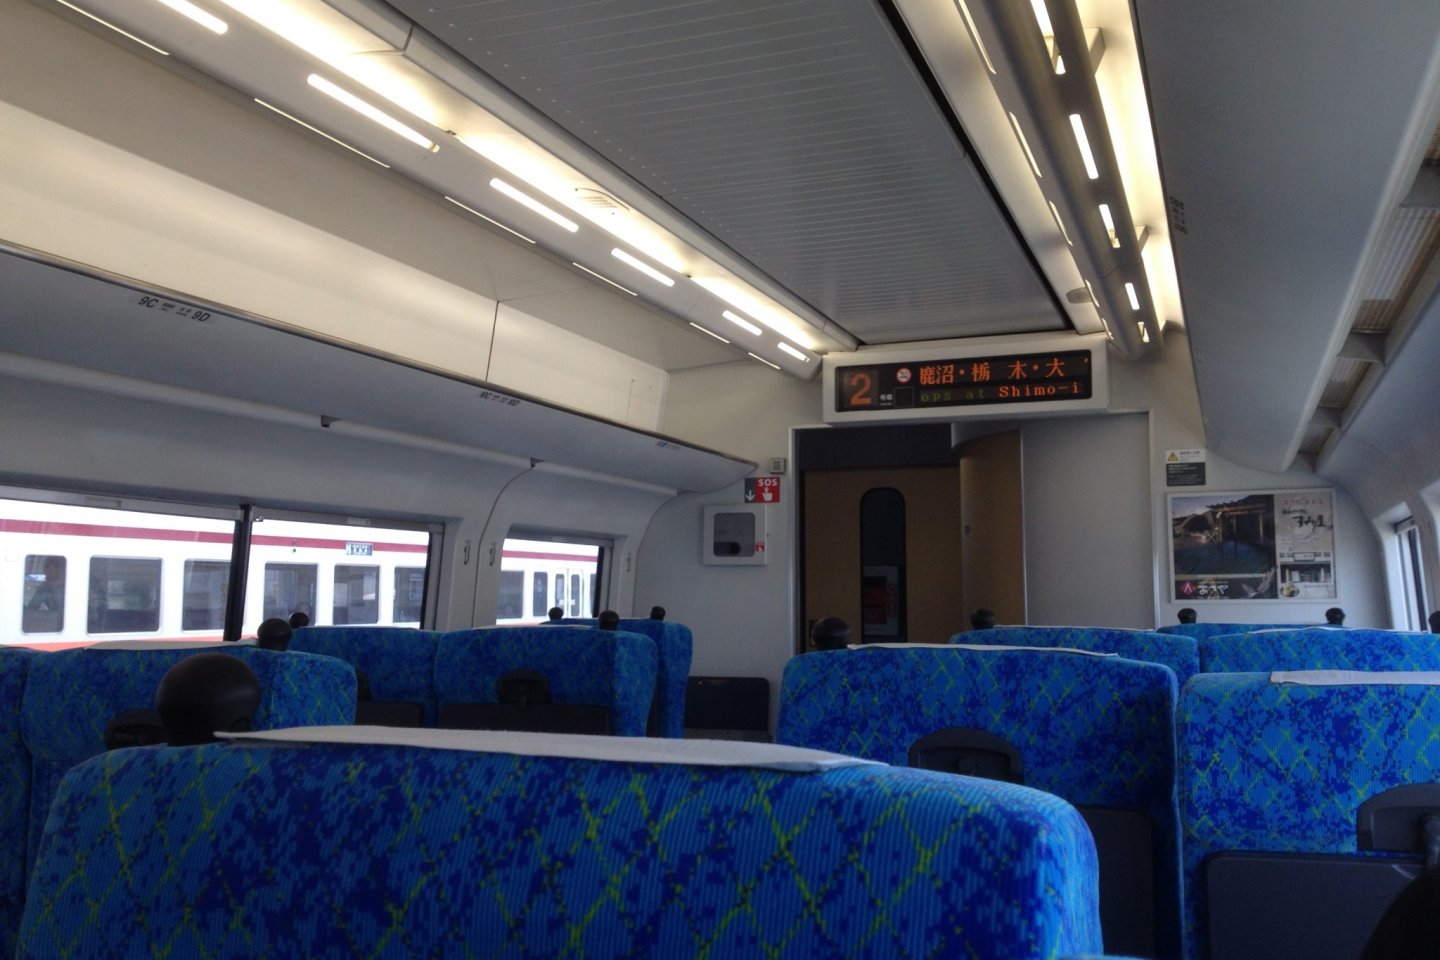 The train's interior